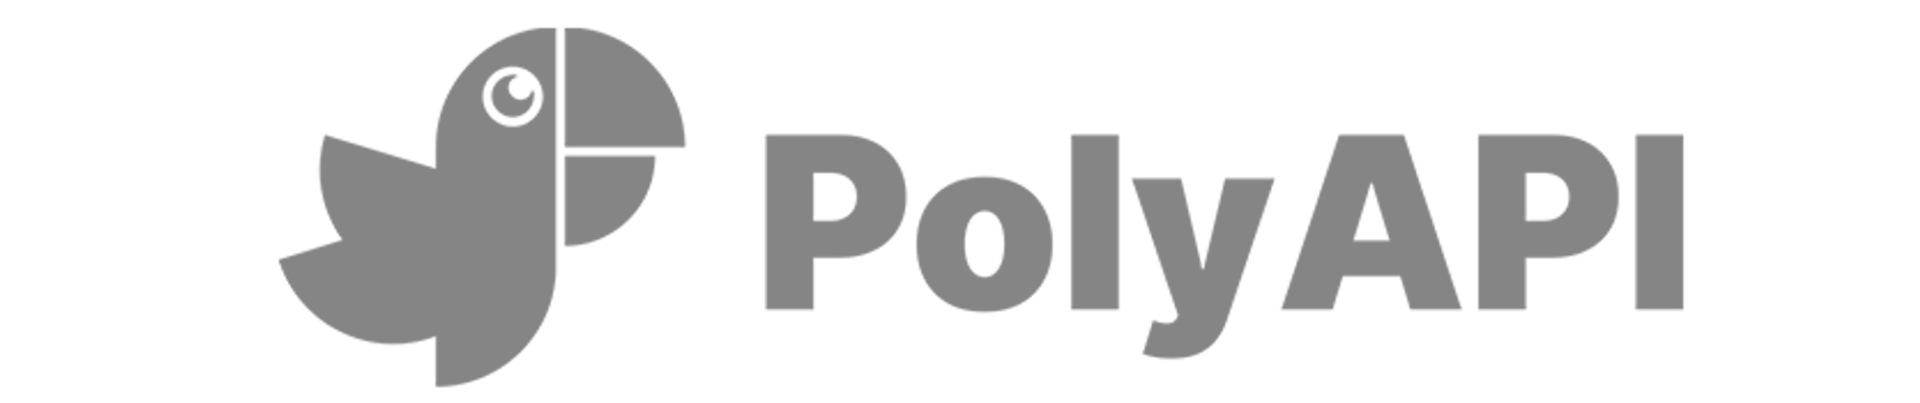 PolyAPI